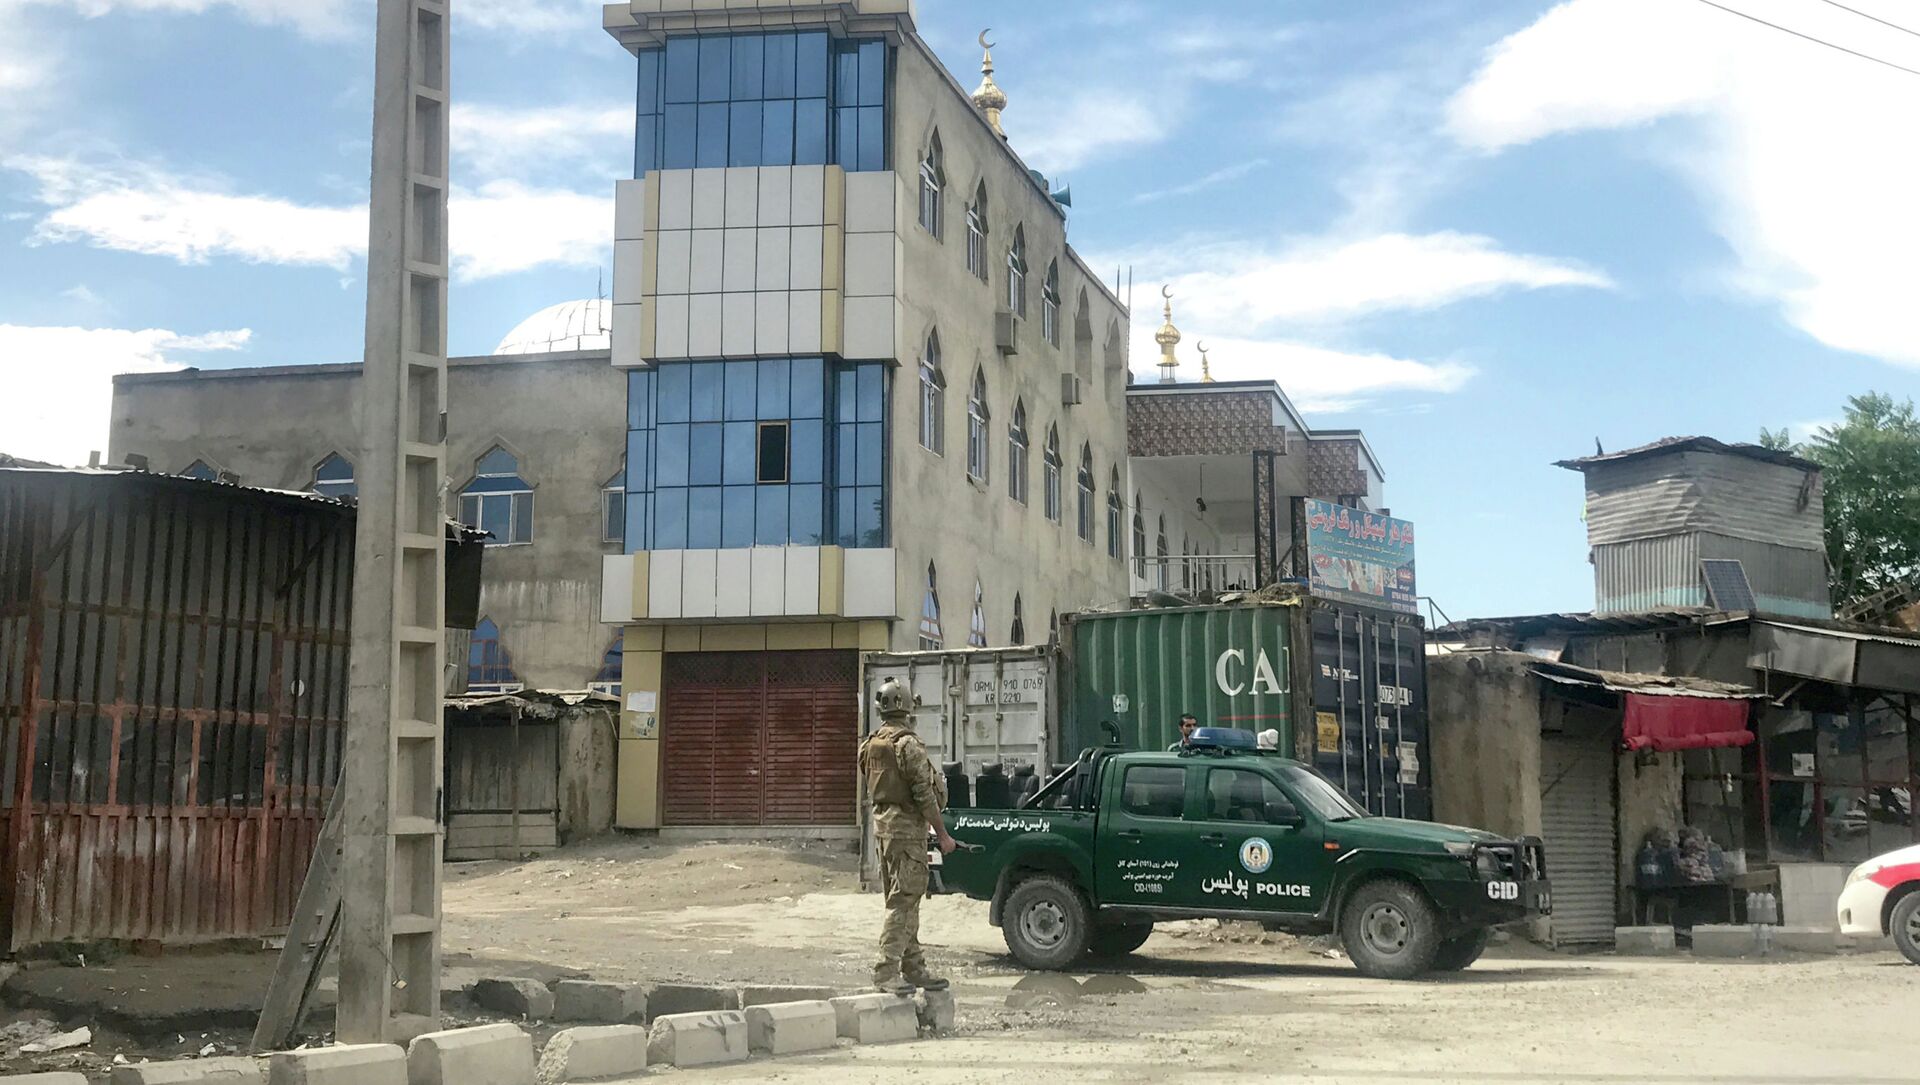 Афганские силы безопасности следят за мечетью после взрыва в Кабуле, Афганистан, 24 мая 2019 года - Sputnik Казахстан, 1920, 26.05.2021